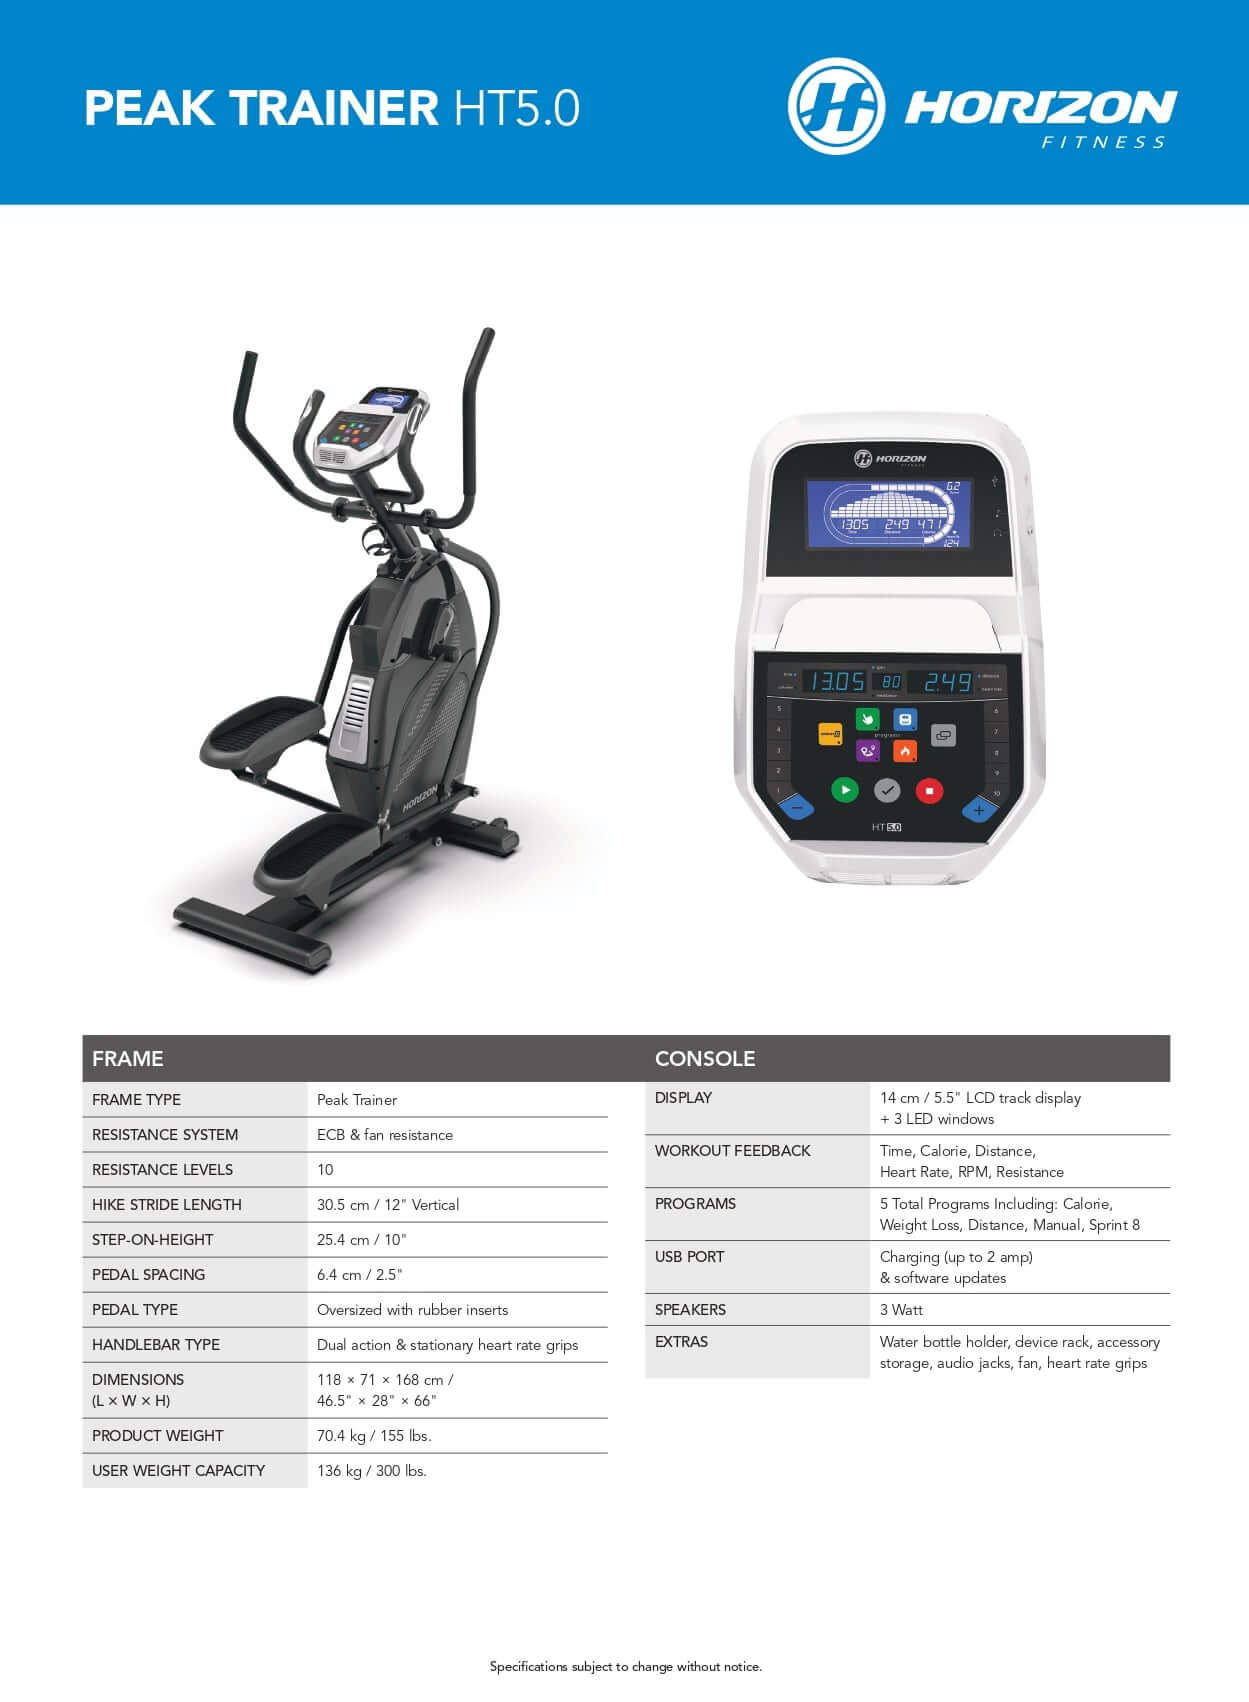 HORIZON Peak Trainer – Wellness Pro Fitness Equipment